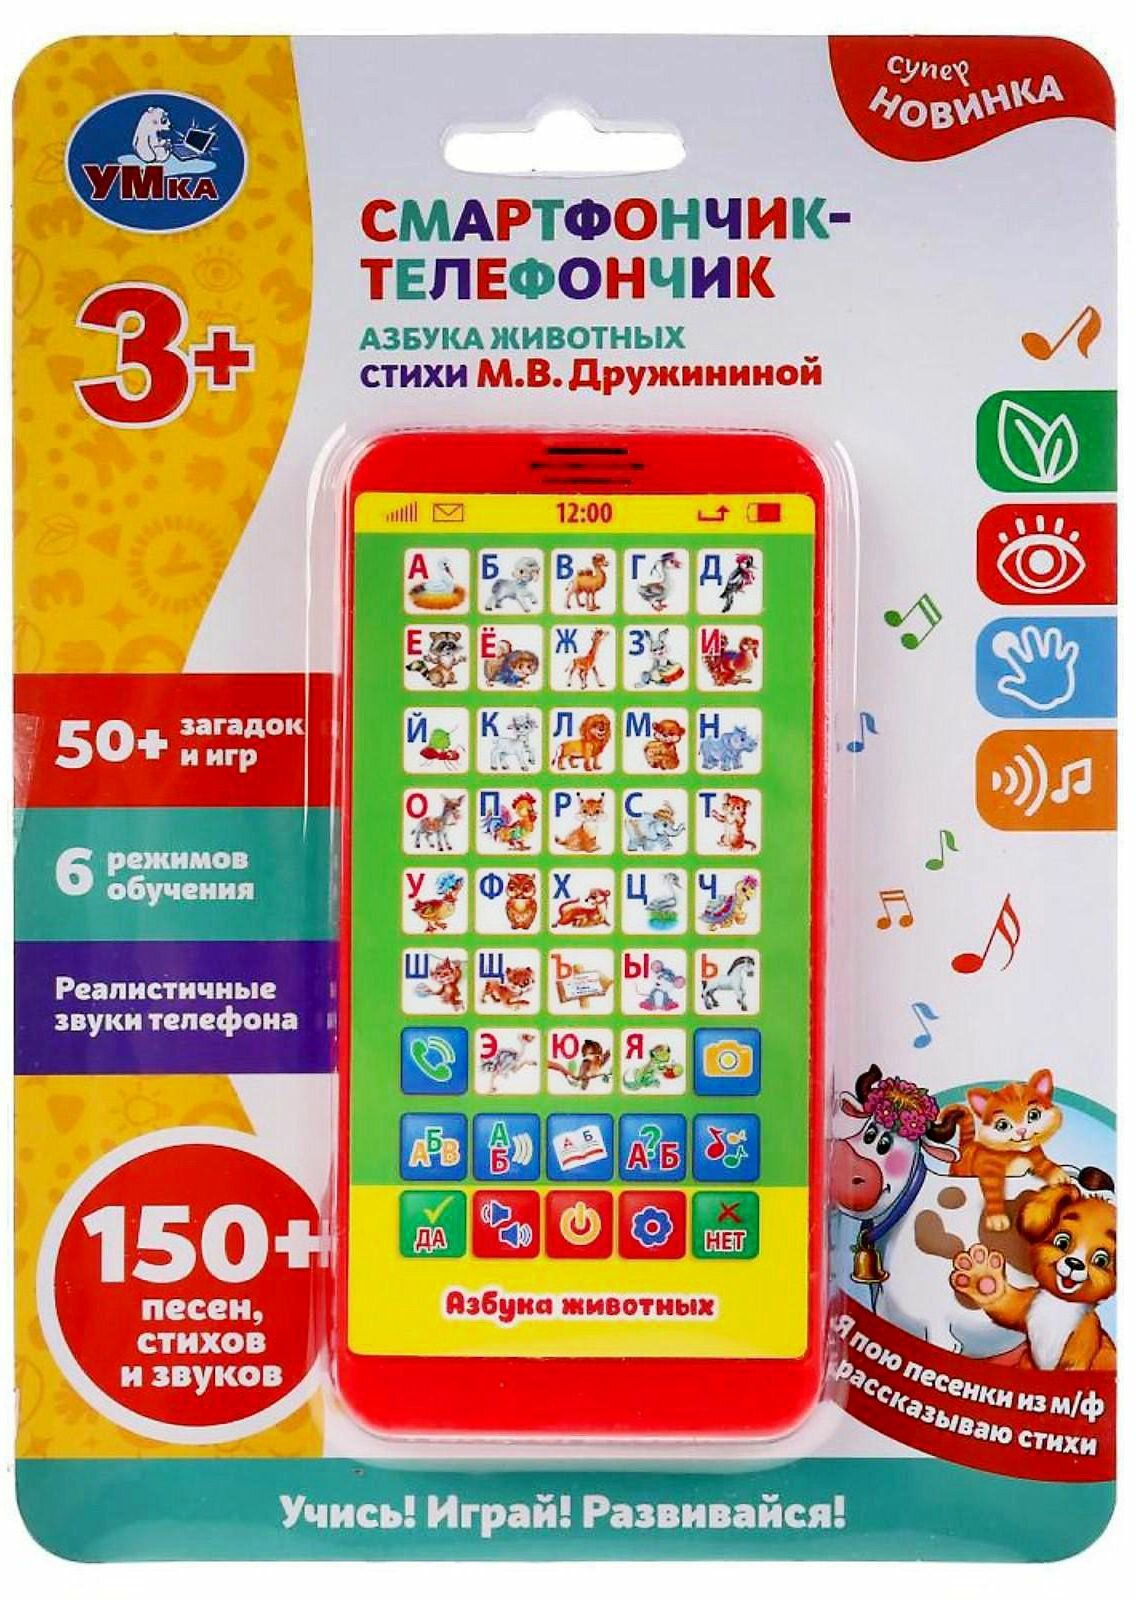 Детский телефон "Азбука животных", электронная интерактивная игрушка, развлекательная музыкальная игра на батарейках, учим буквы русского алфавита, более 50 загадок и игр, 6 режимов обучения